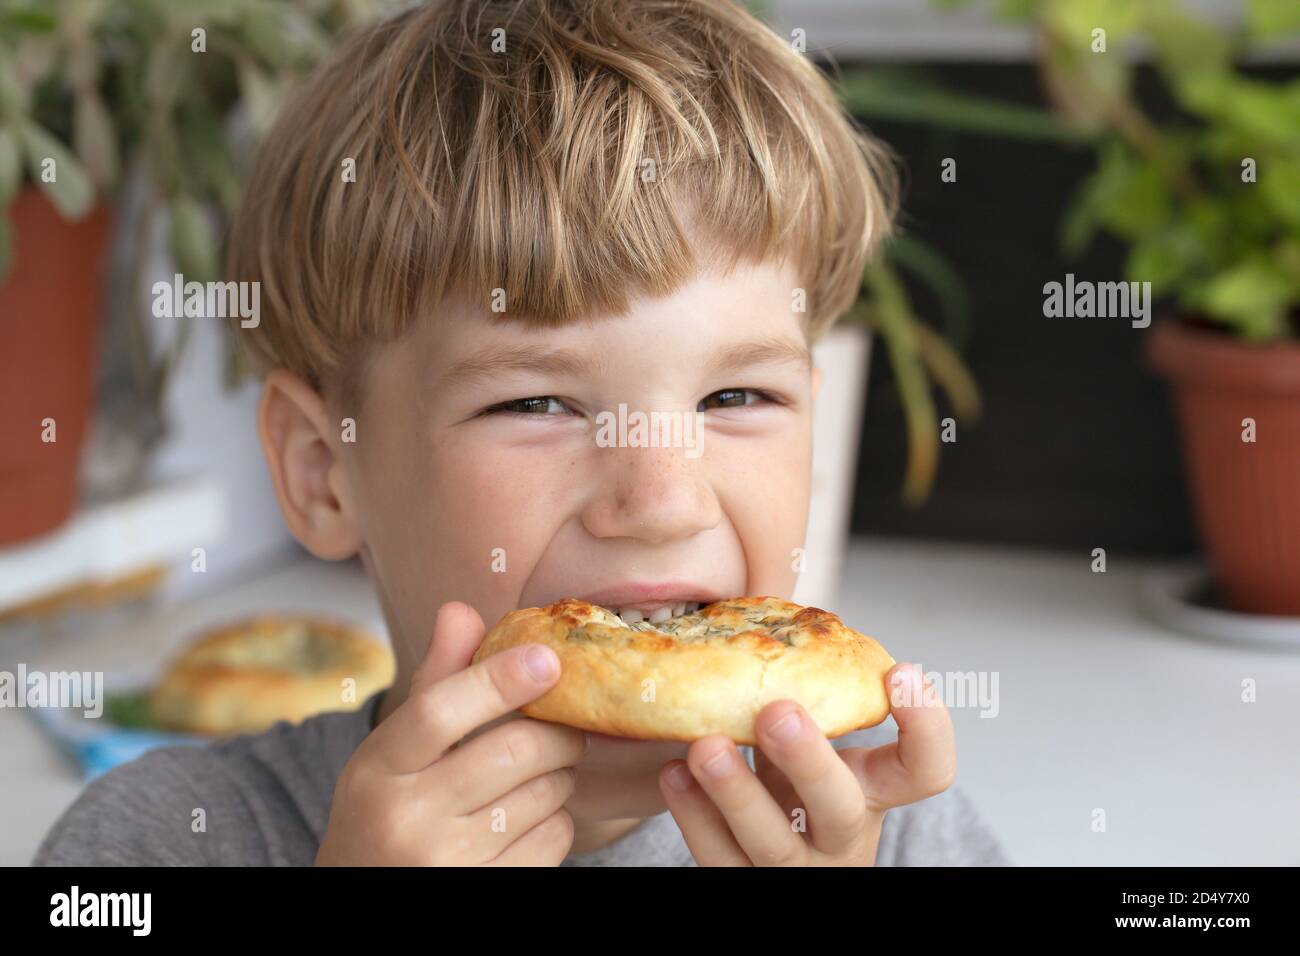 Petit garçon mangeant un beignet. Enfant mangeant de la nourriture de restauration rapide malsaine. Le problème est l'obésité infantile Banque D'Images